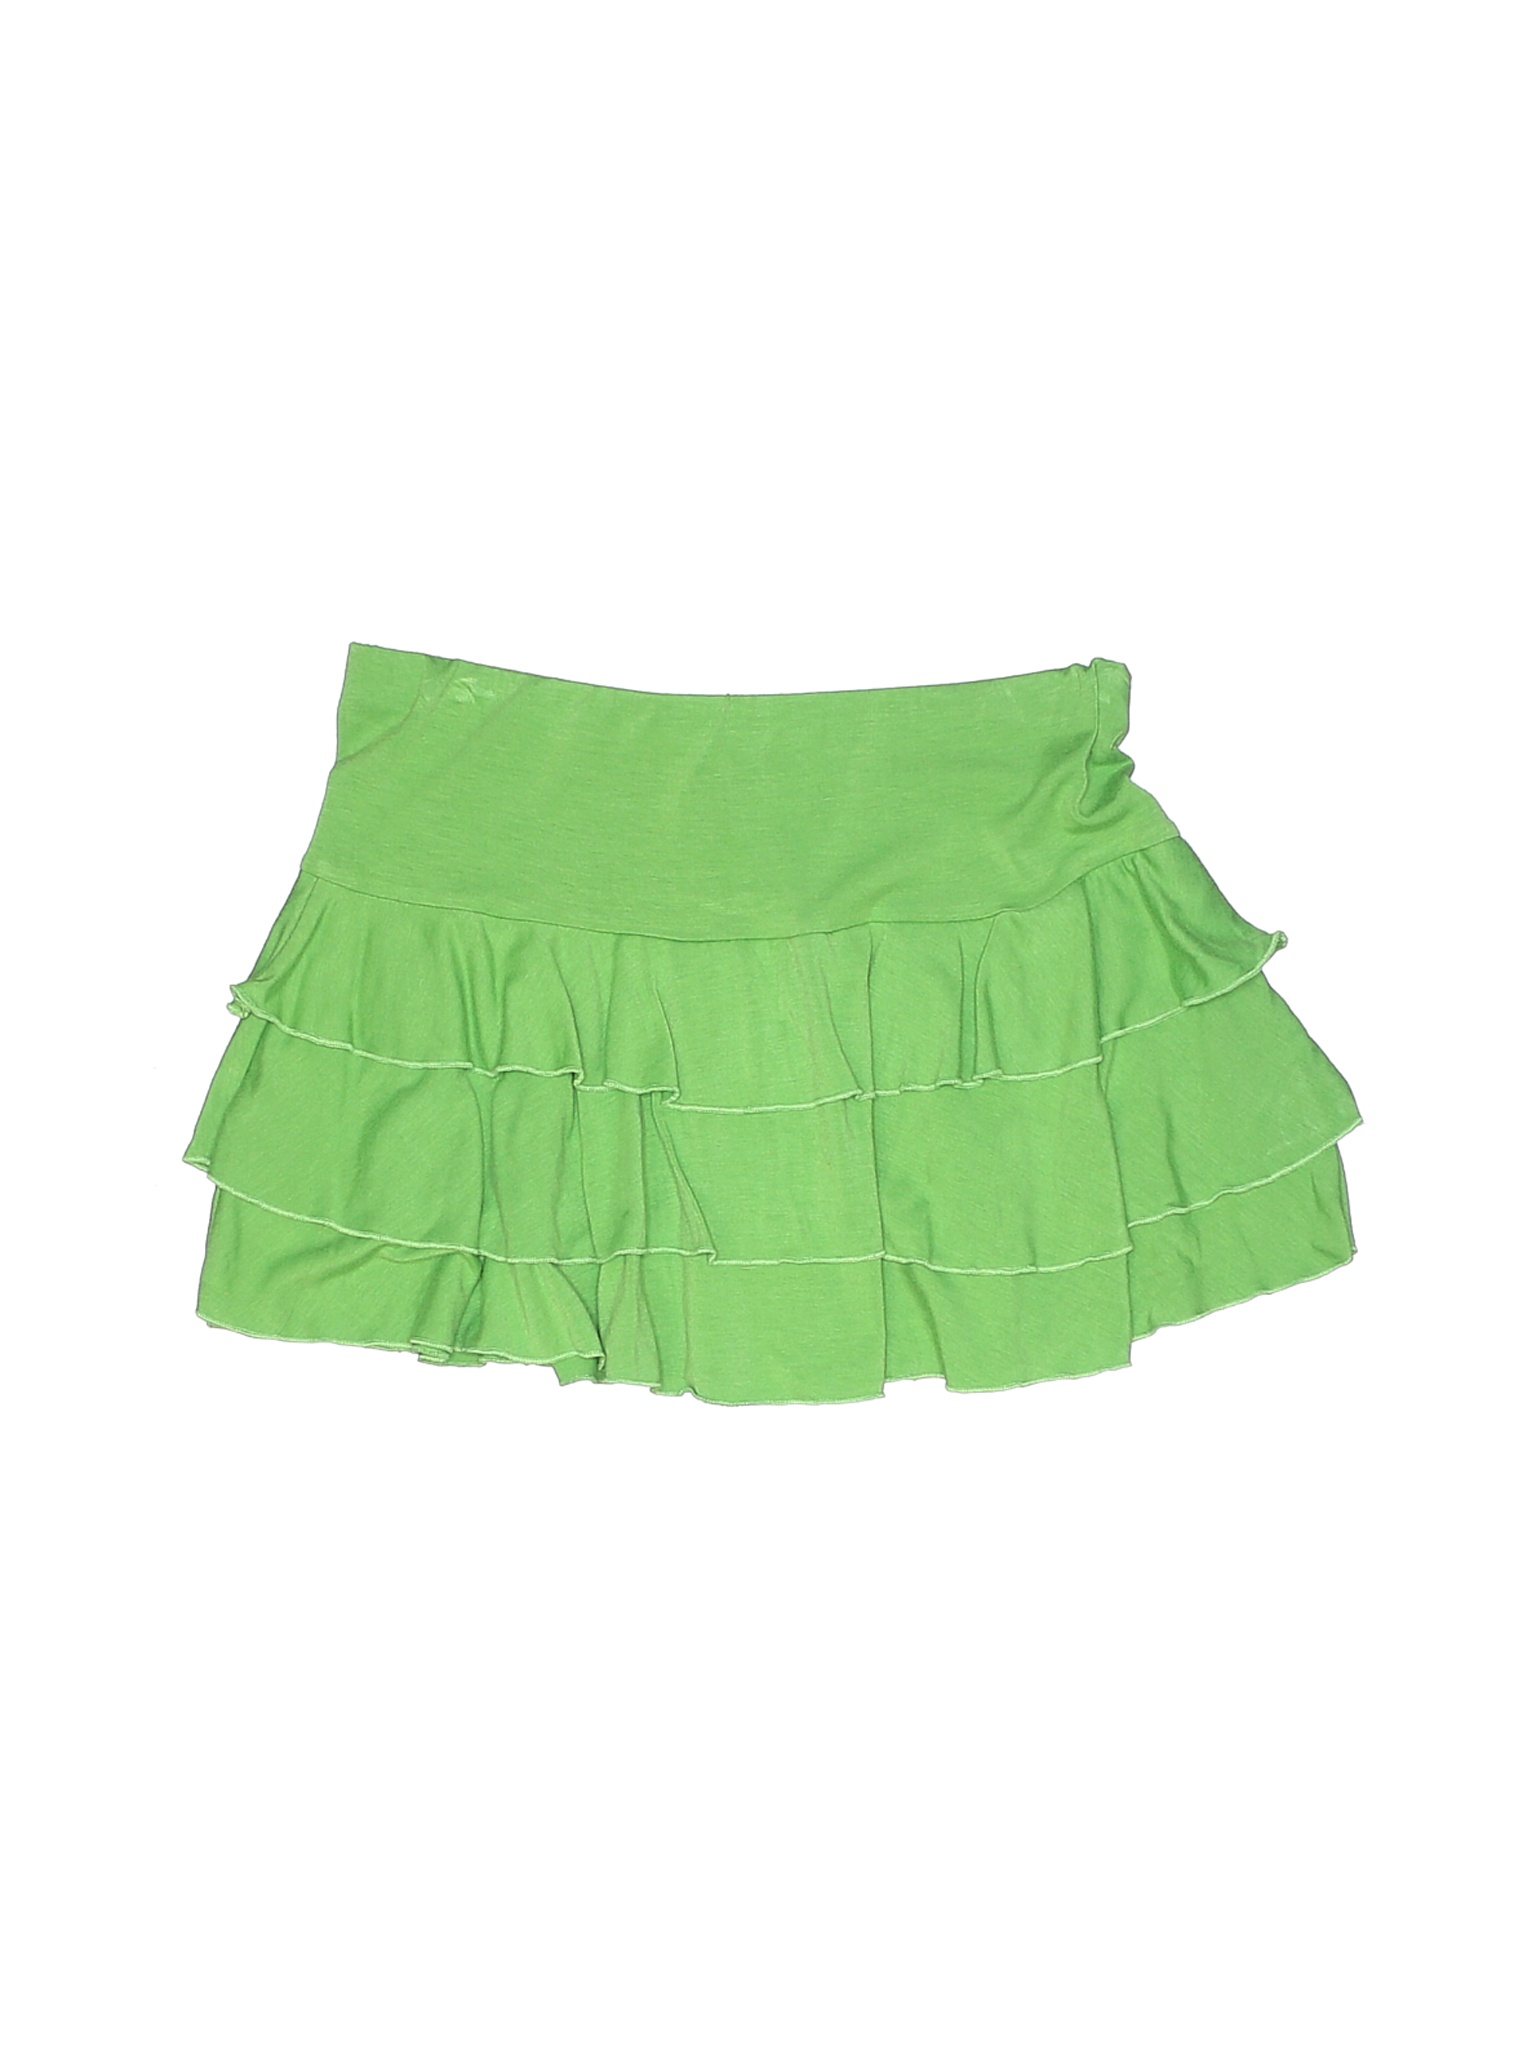 L8ter Girls Green Skirt M Youth | eBay